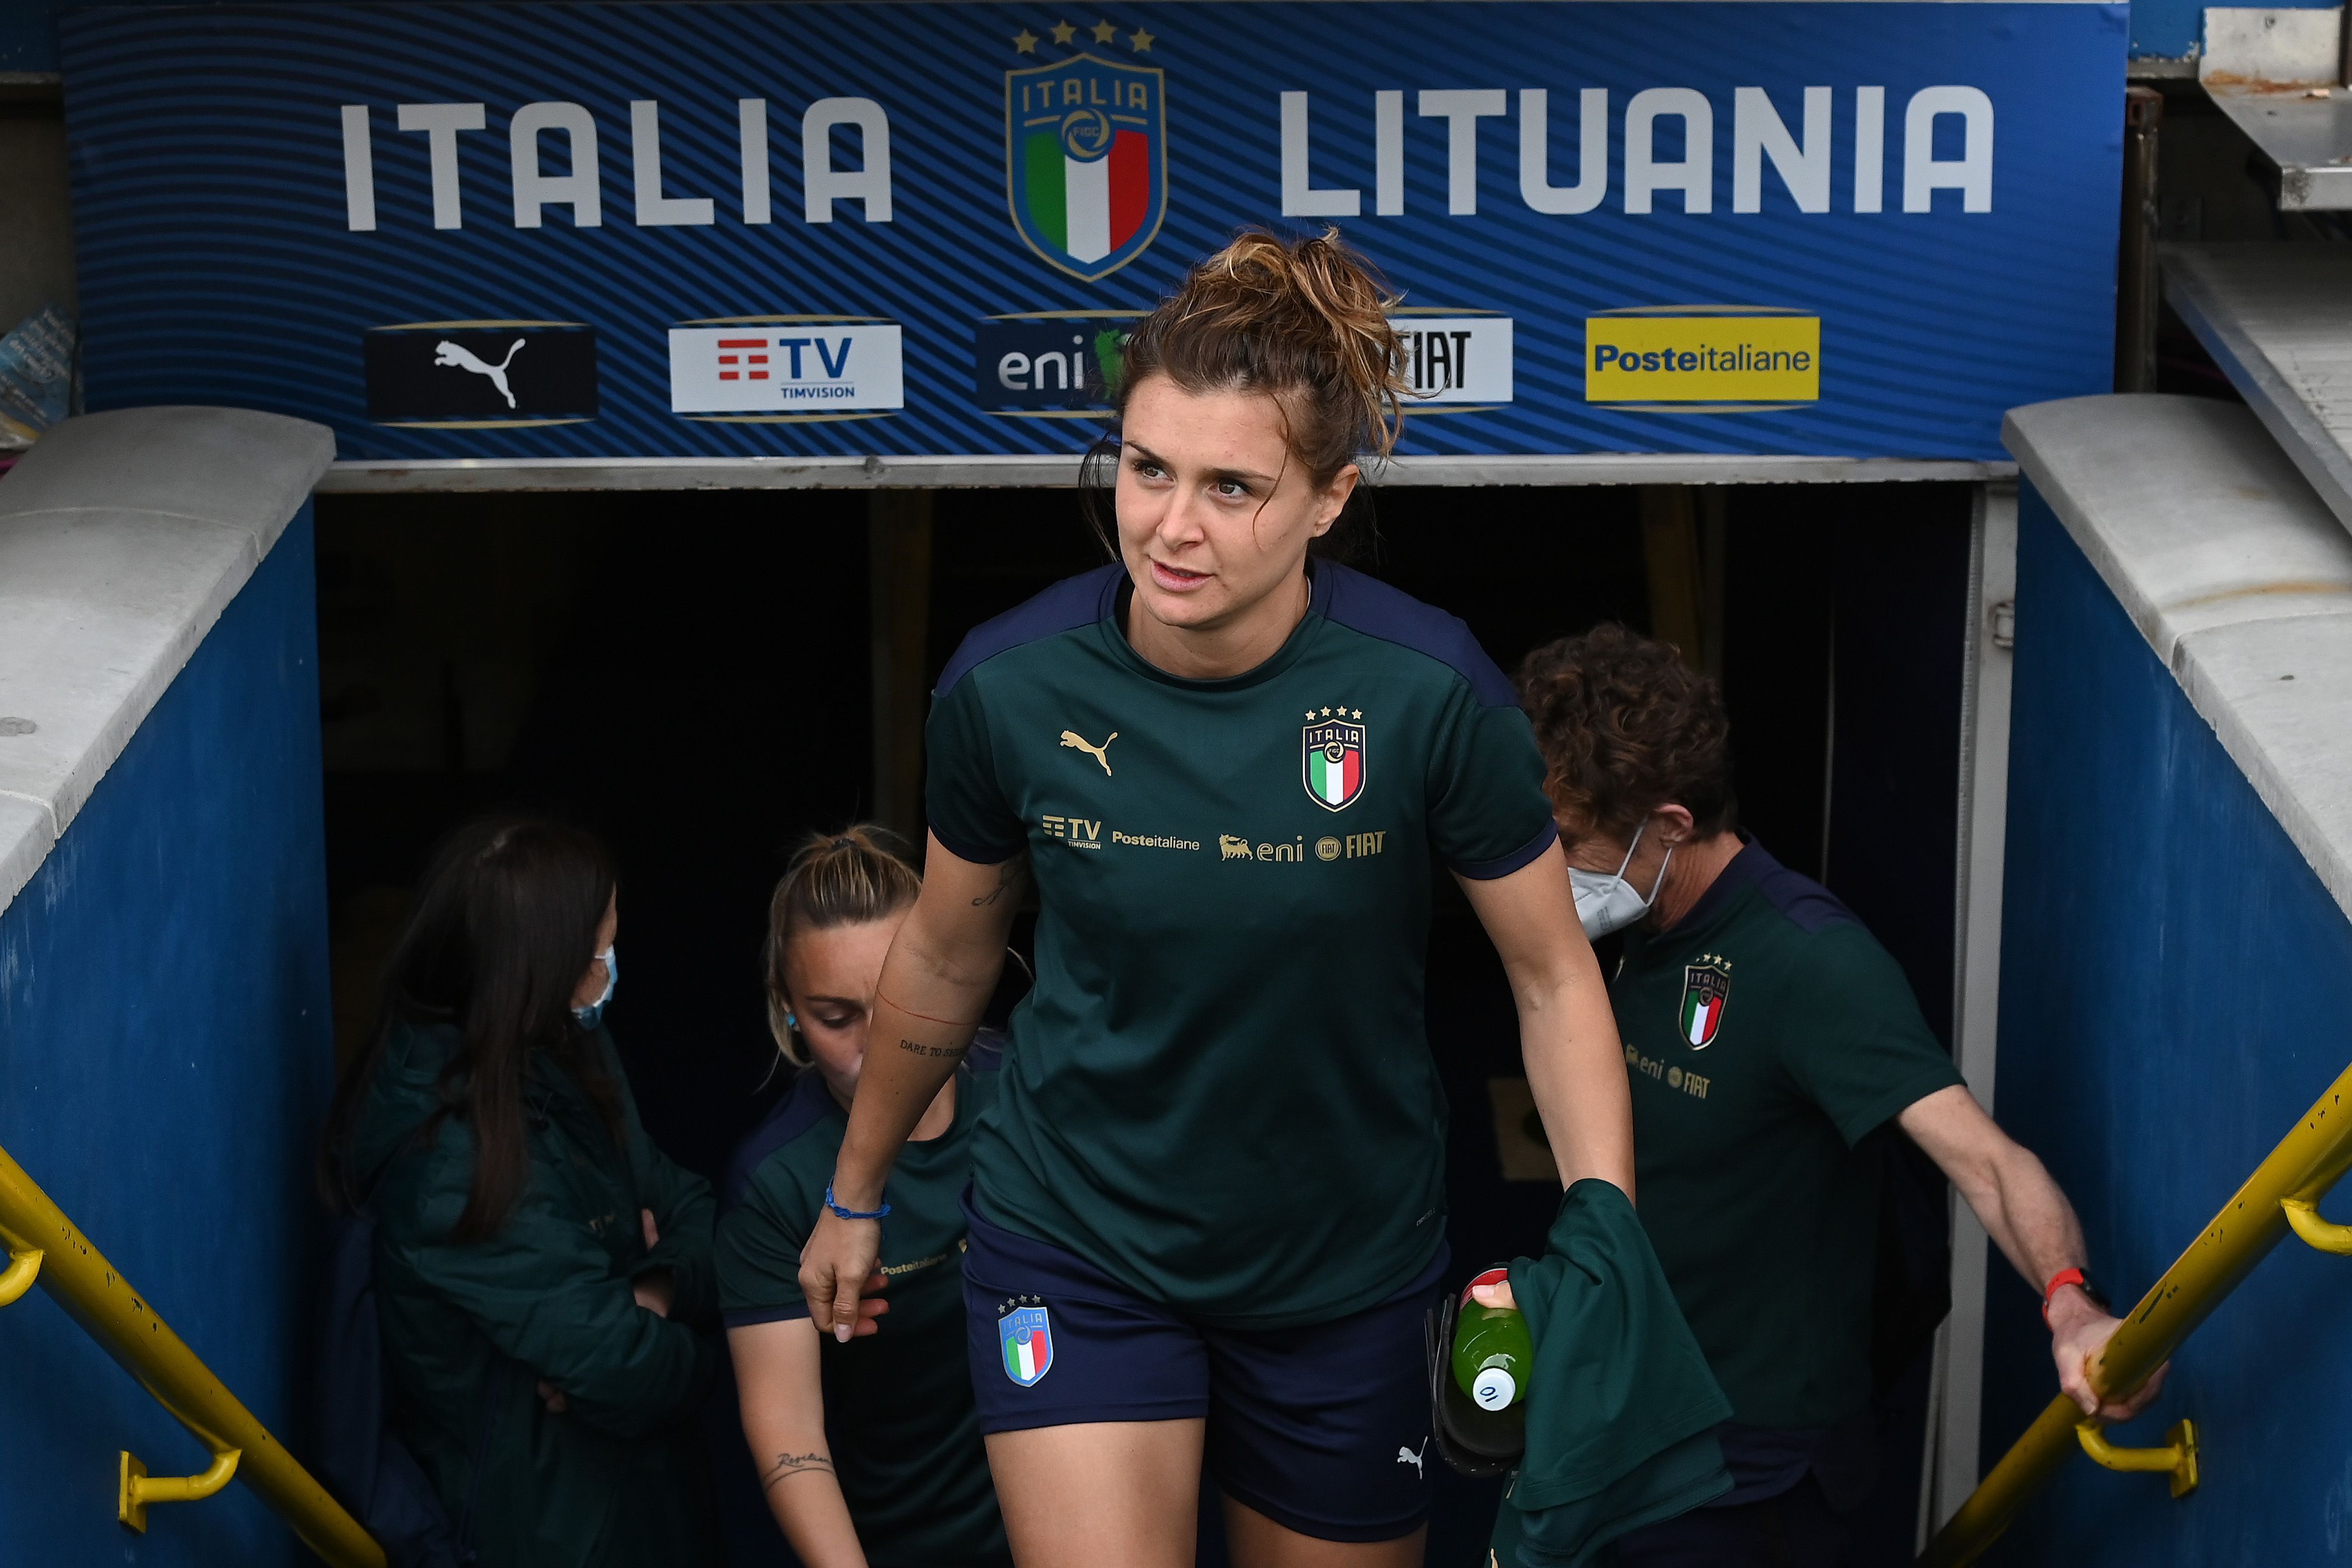 Italy striker Cristiana Girelli